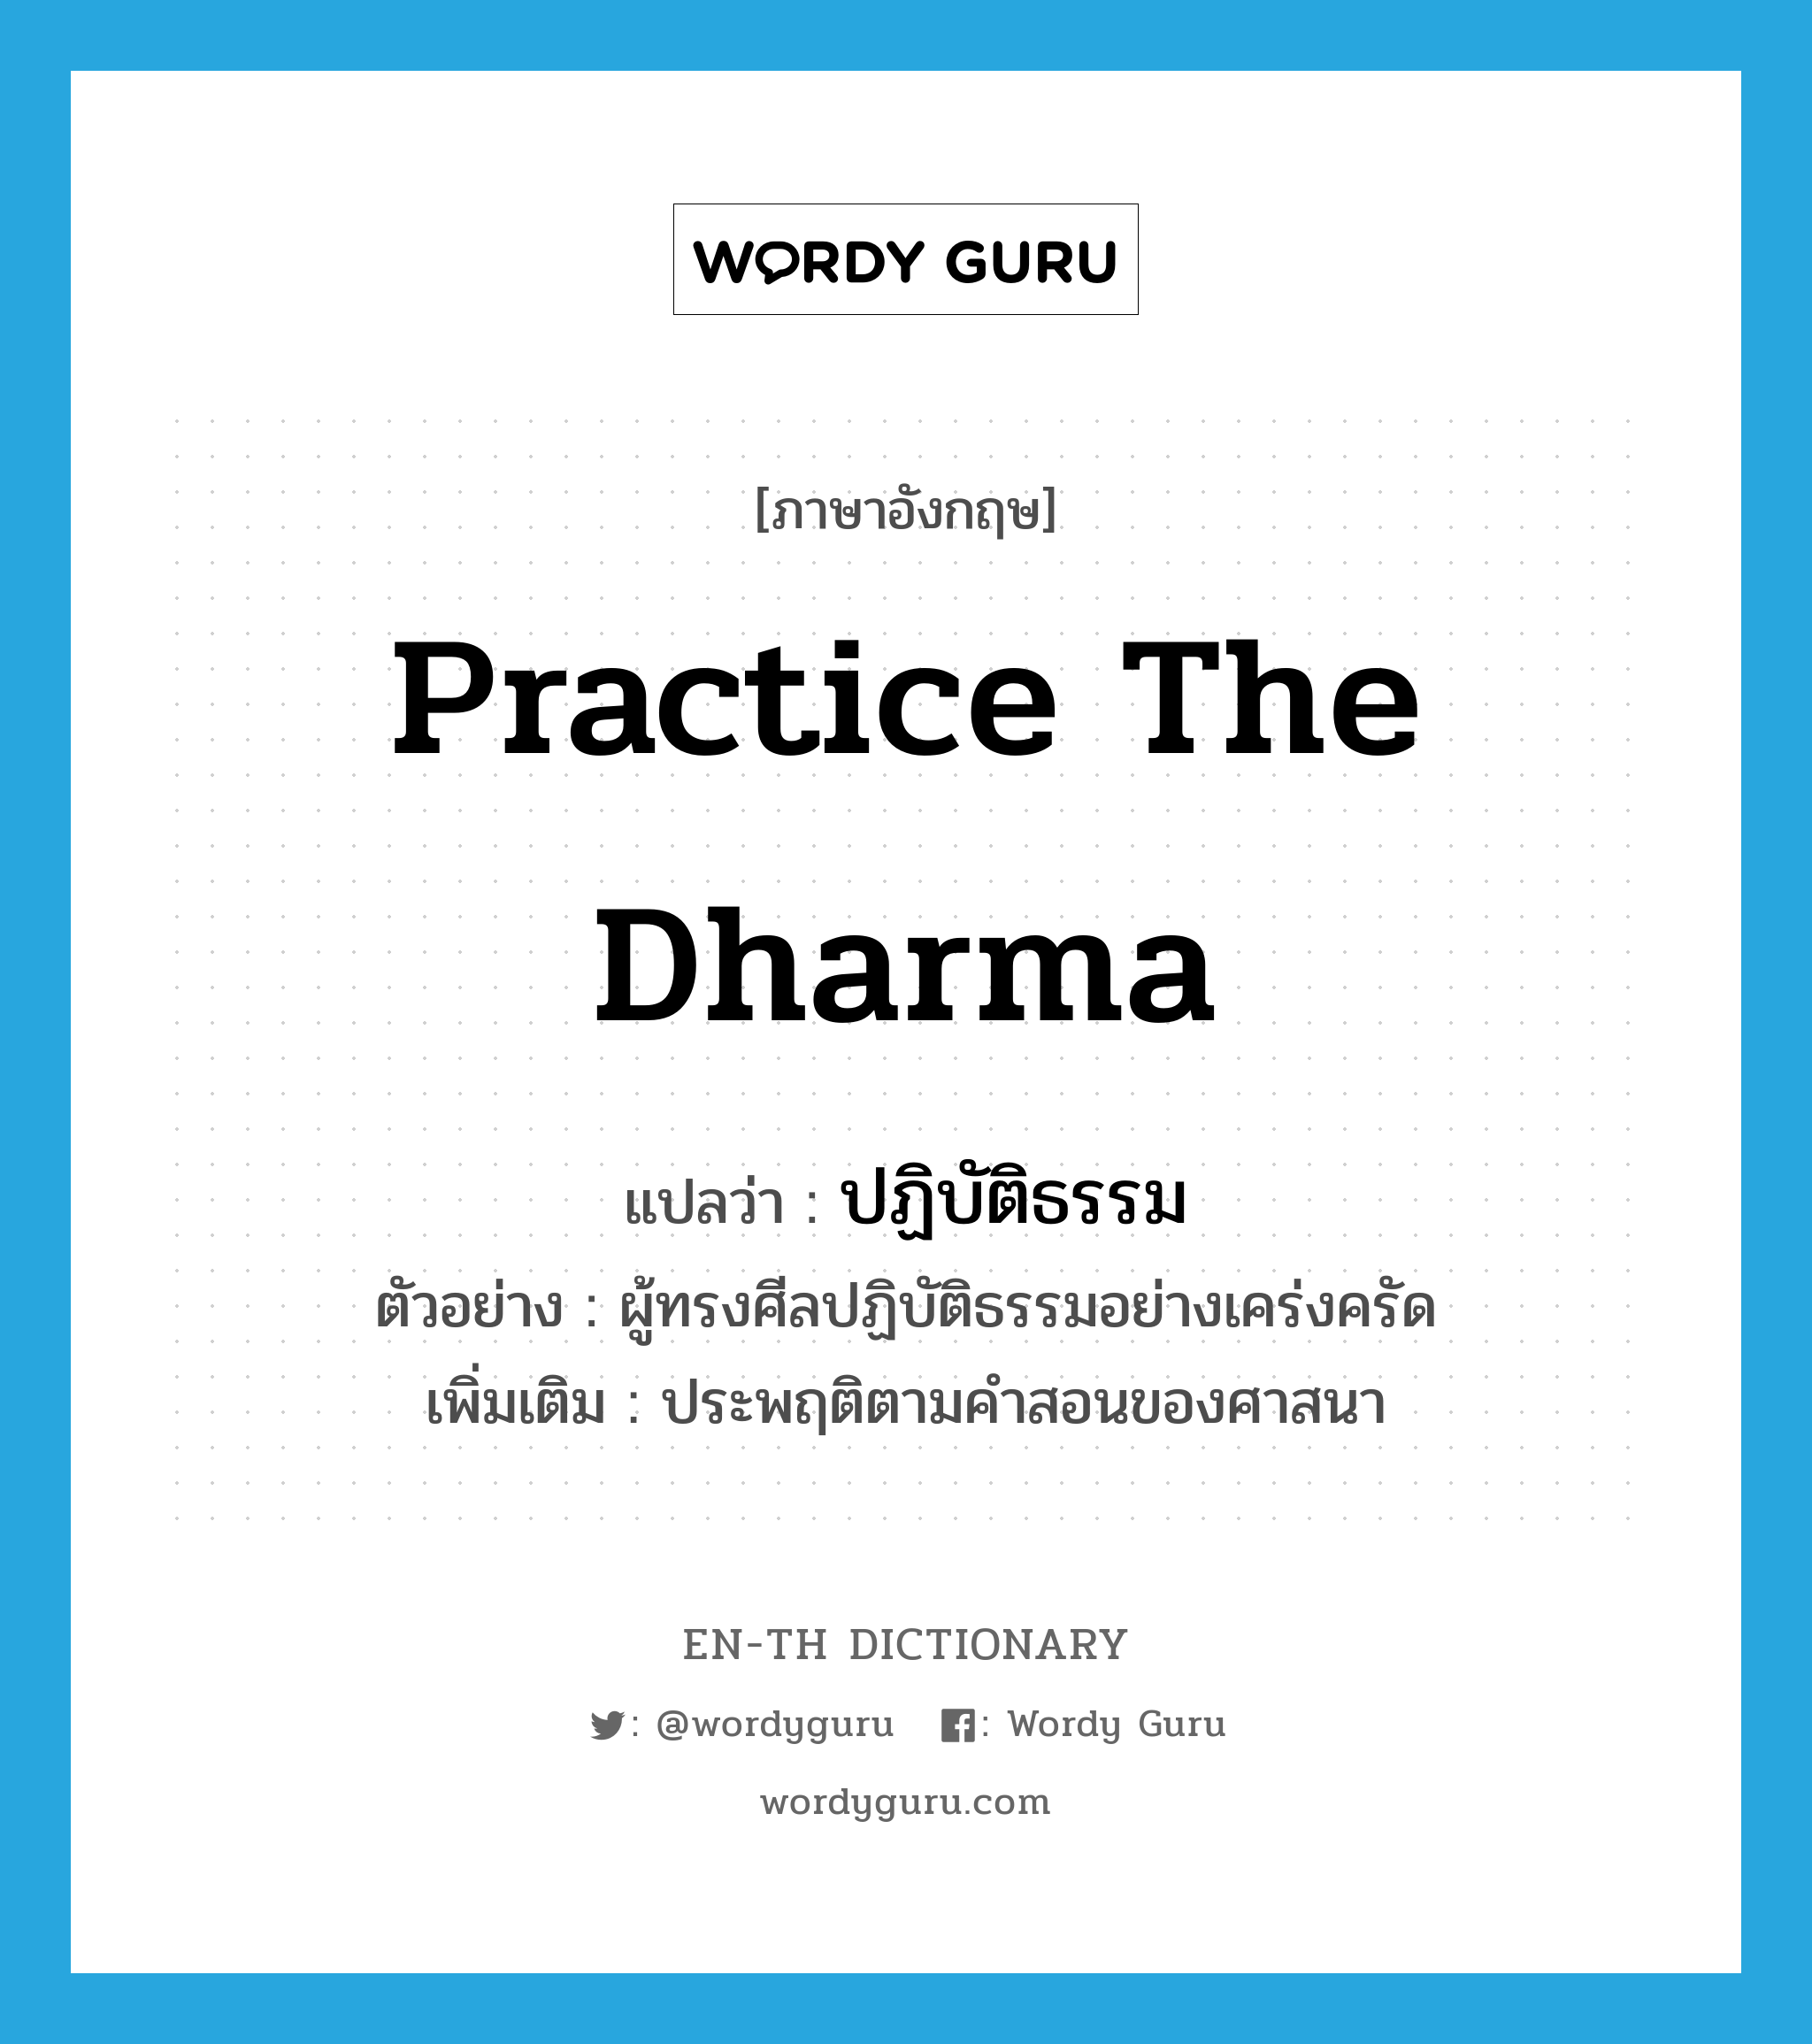 practice the dharma แปลว่า?, คำศัพท์ภาษาอังกฤษ practice the dharma แปลว่า ปฏิบัติธรรม ประเภท V ตัวอย่าง ผู้ทรงศีลปฏิบัติธรรมอย่างเคร่งครัด เพิ่มเติม ประพฤติตามคำสอนของศาสนา หมวด V